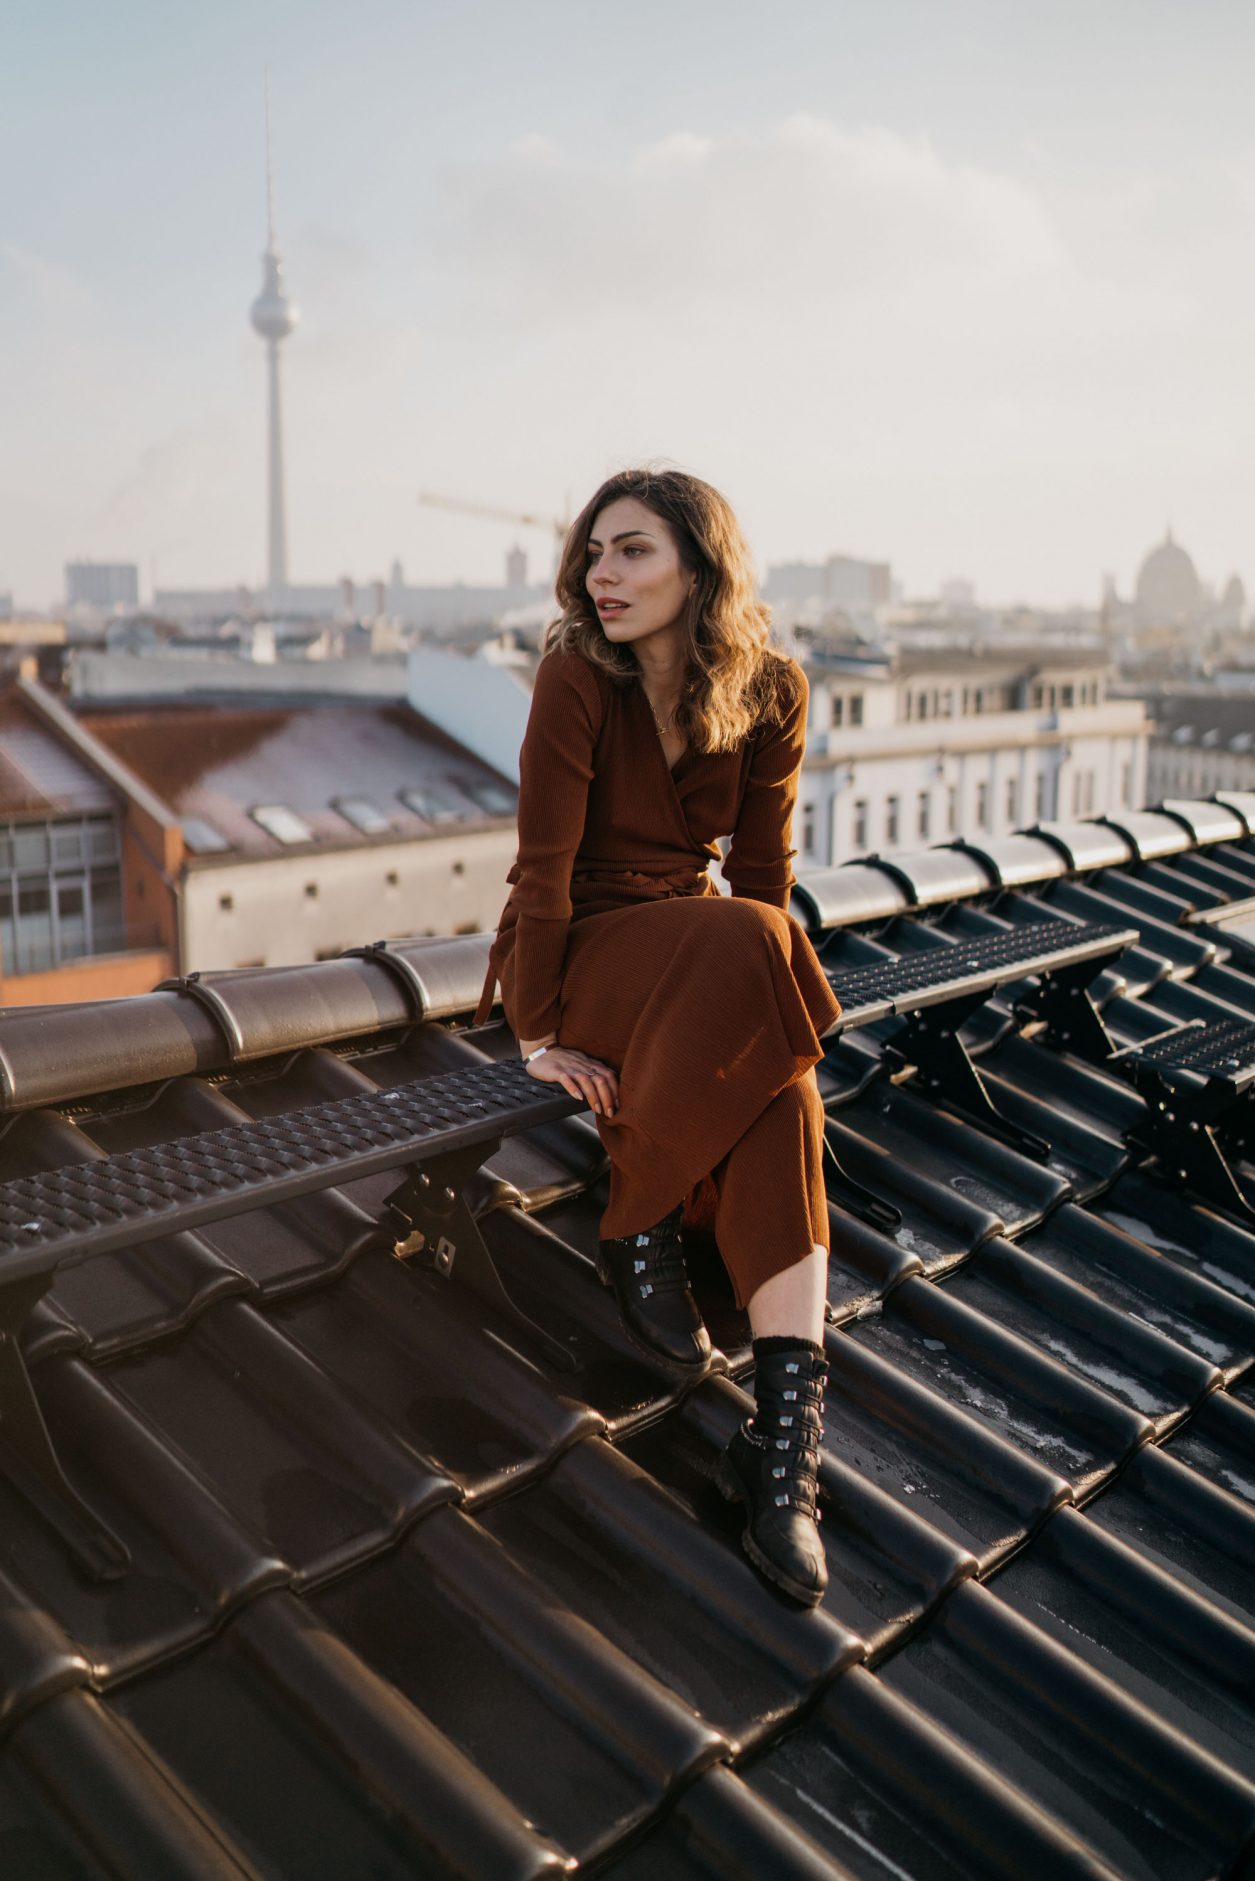 Moody Editorial auf einem Dach / Rooftop in Berlin Mitte von Masha Sedgwick (Maria Astor) | Kolumne | Stolz sein | Selbstliebe | Glaubenssätze